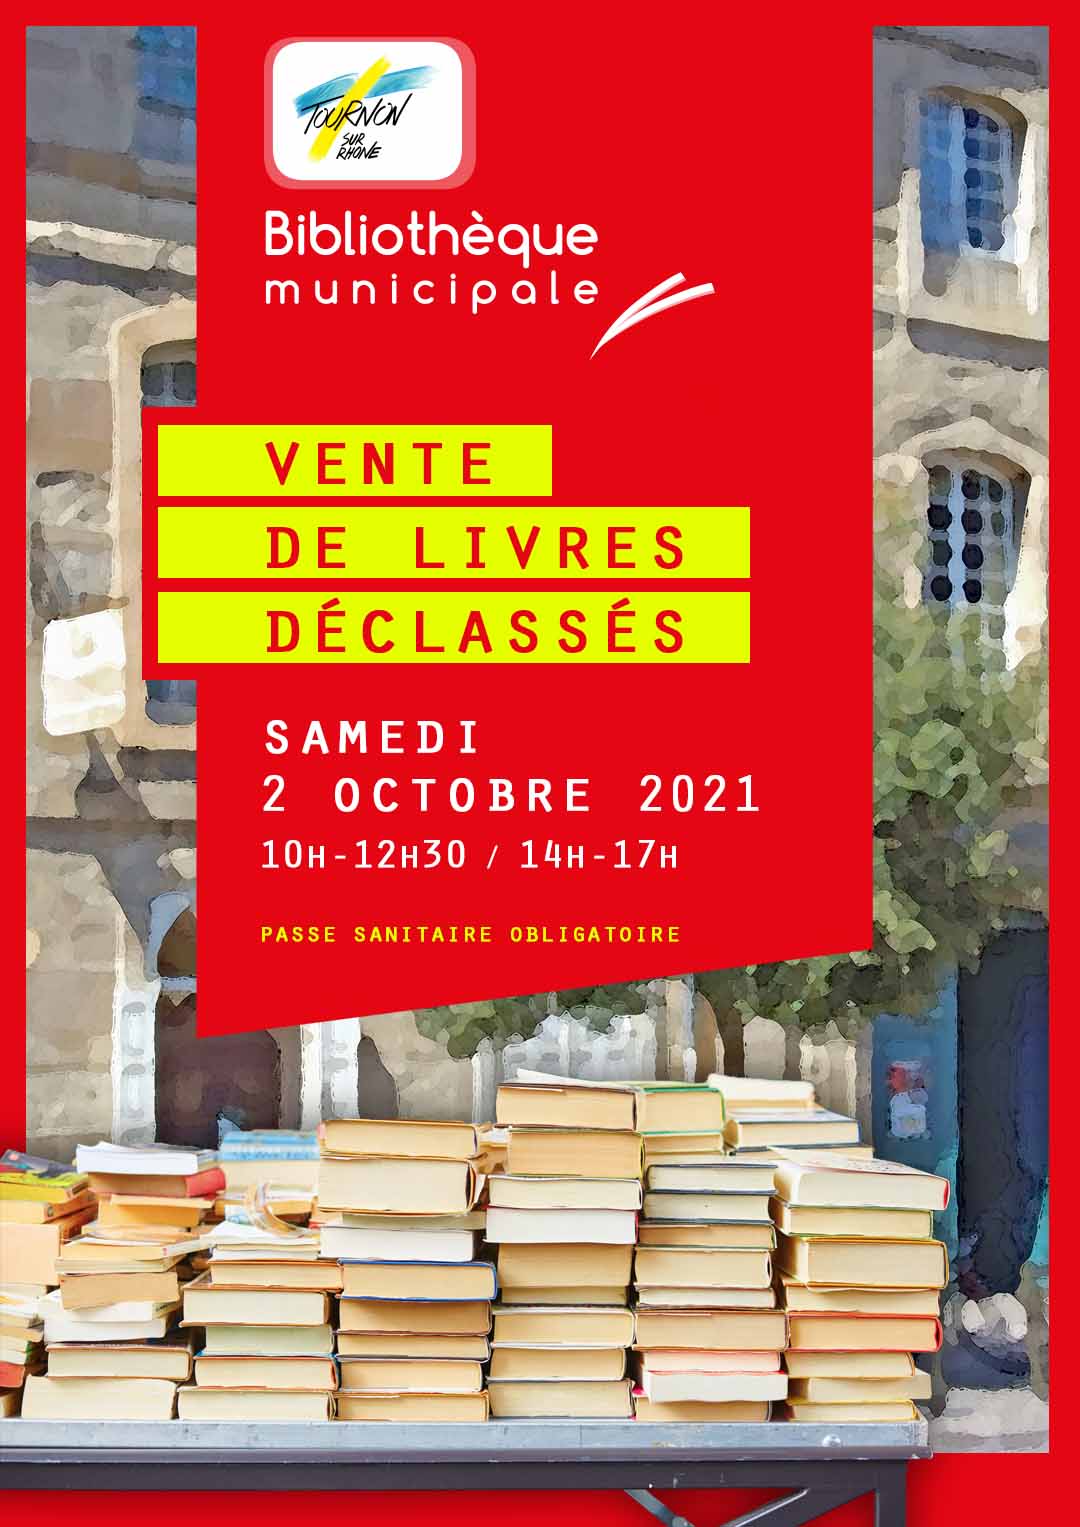 La bibliothèque municipale de Tournon-sur-Rhône organise une vente de livres déclassés.Samedi 2 octobre 2021 de 10h à 12h30 et de 14h à 17h.